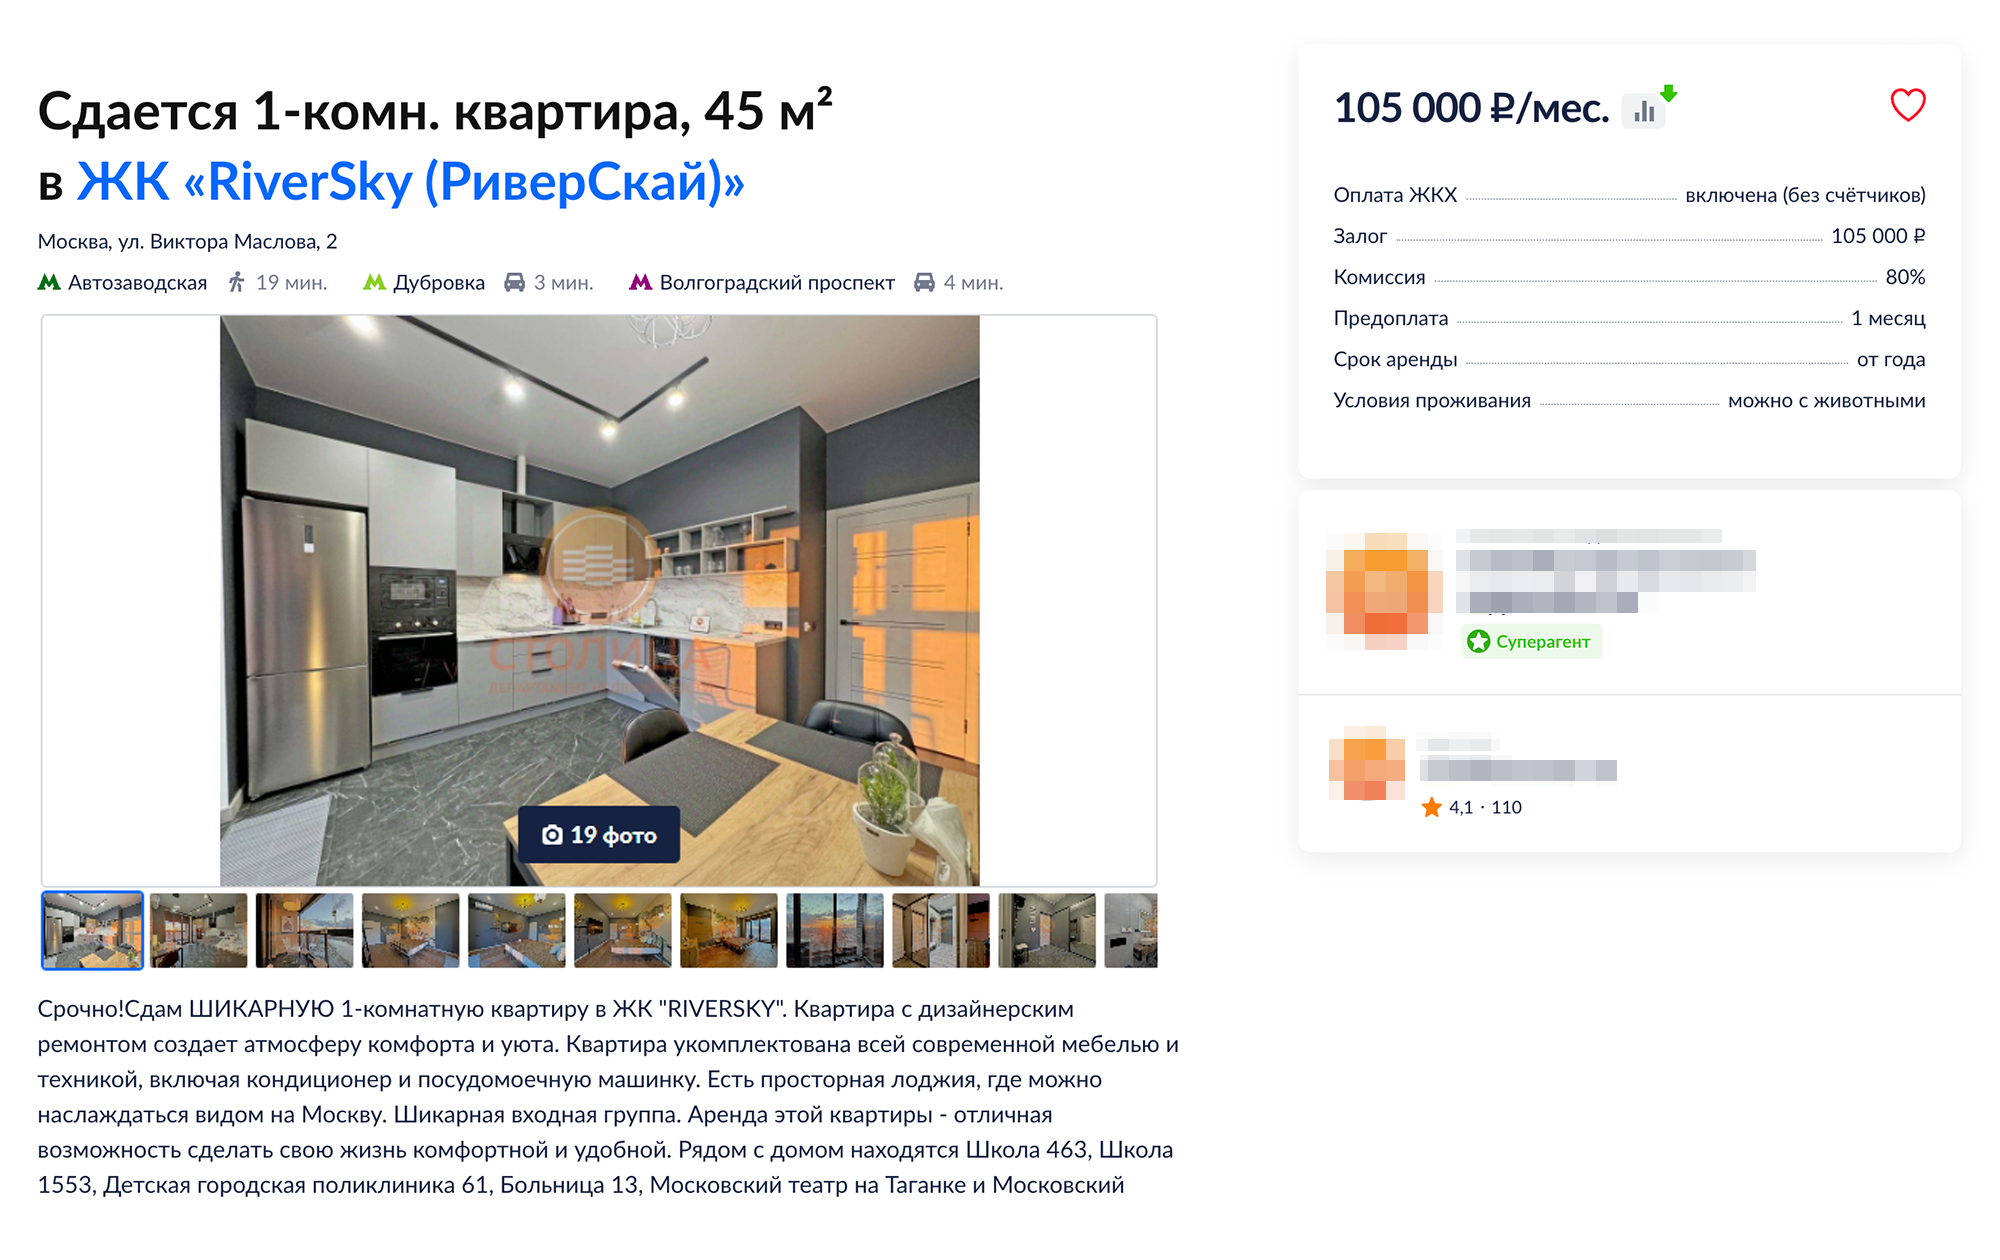 В сегменте бизнес-класса можно снять квартиру с дизайнерским ремонтом, мебелью и техникой. Источник: cian.ru